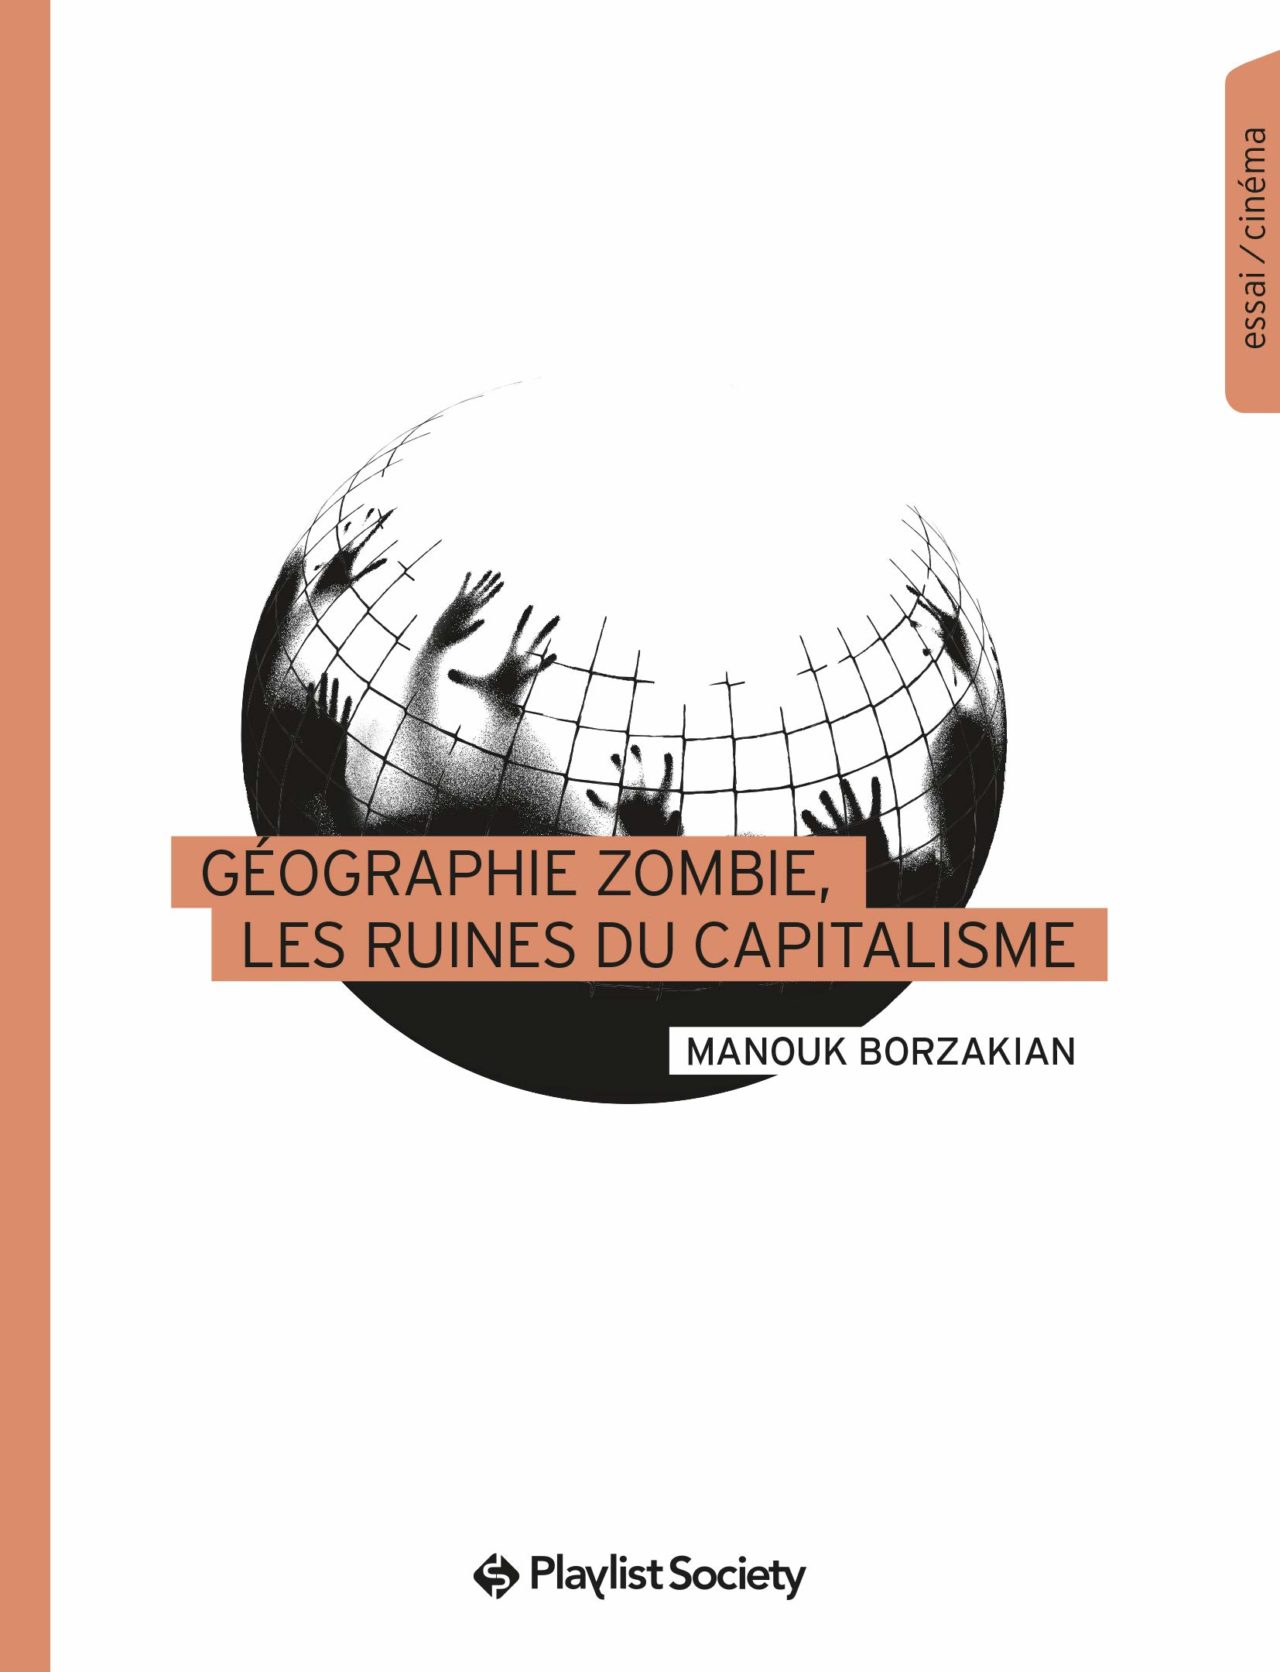 « Géographie zombie, les ruines du capitalisme » de Manouk Borzakian